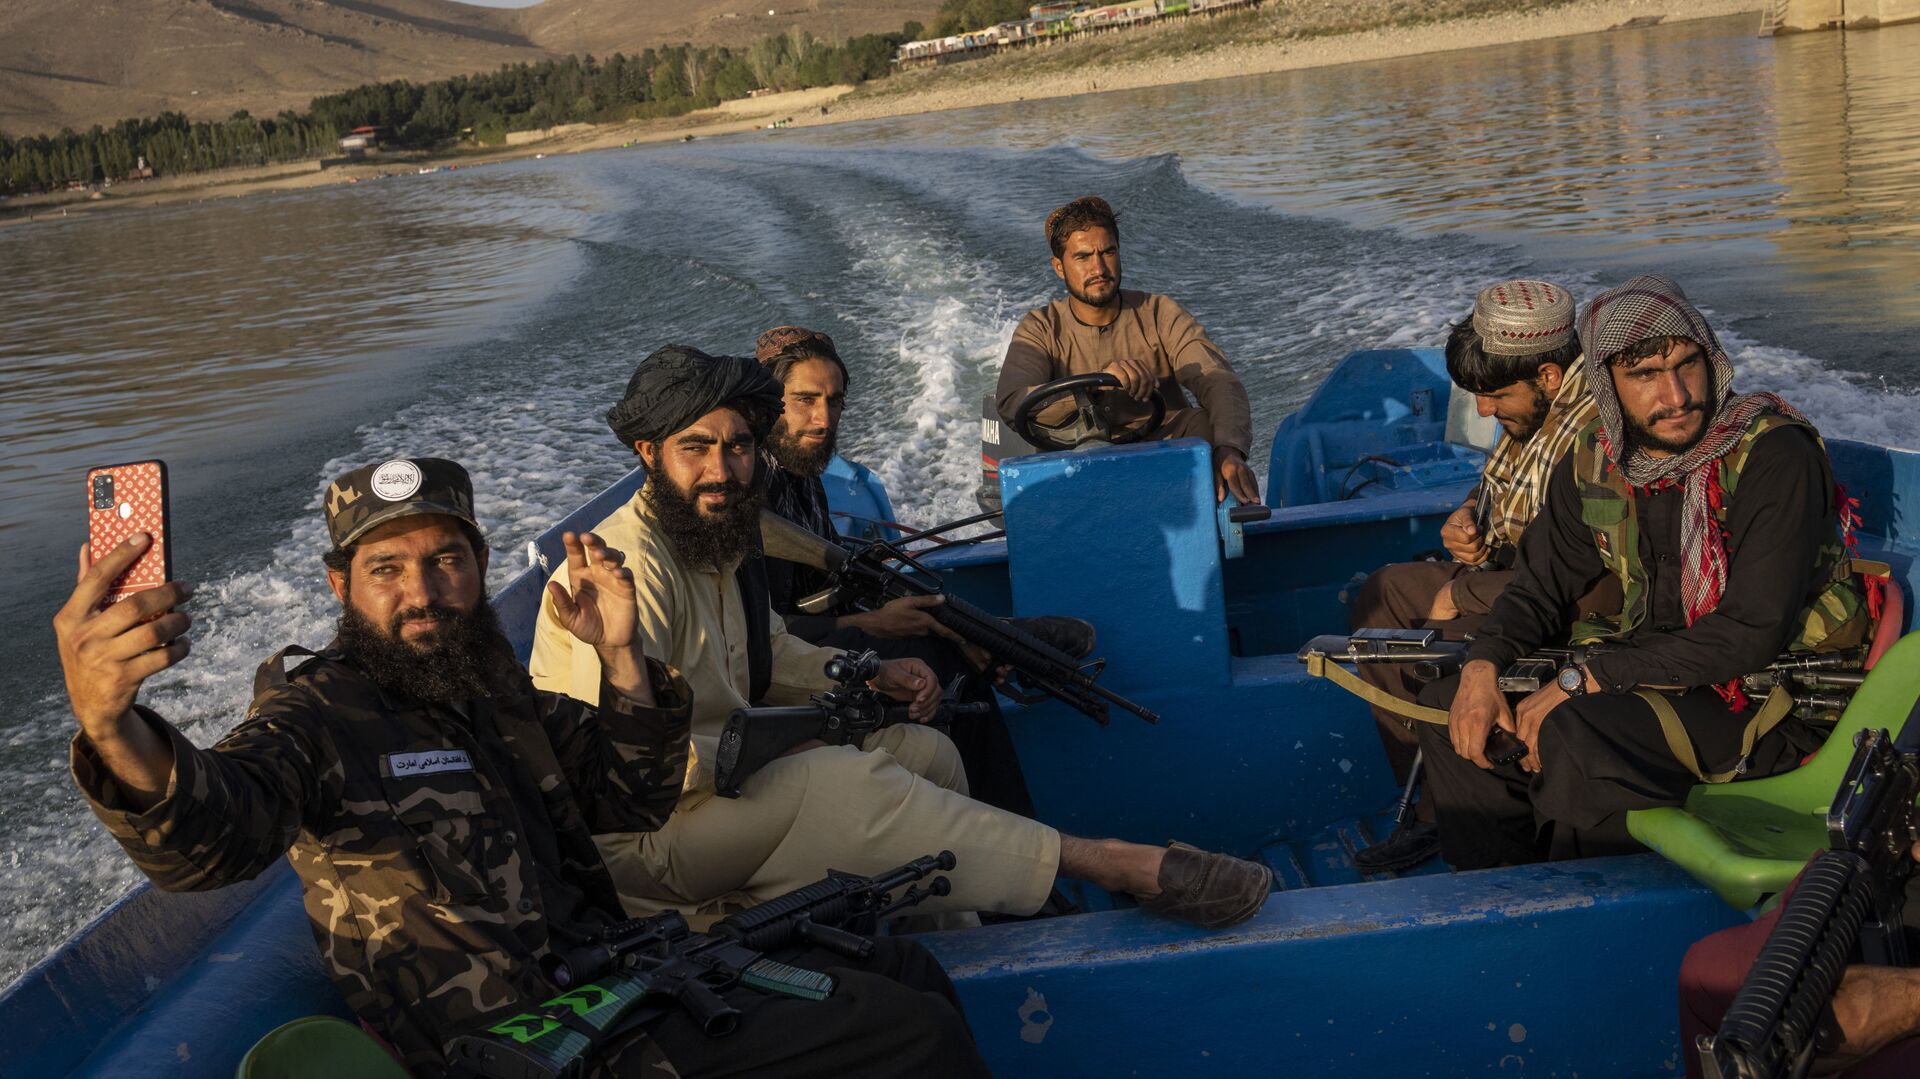 Бойцы Талибана наслаждаются прогулкой на лодке по плотине Карга, Афганистан - Sputnik Узбекистан, 1920, 19.11.2021